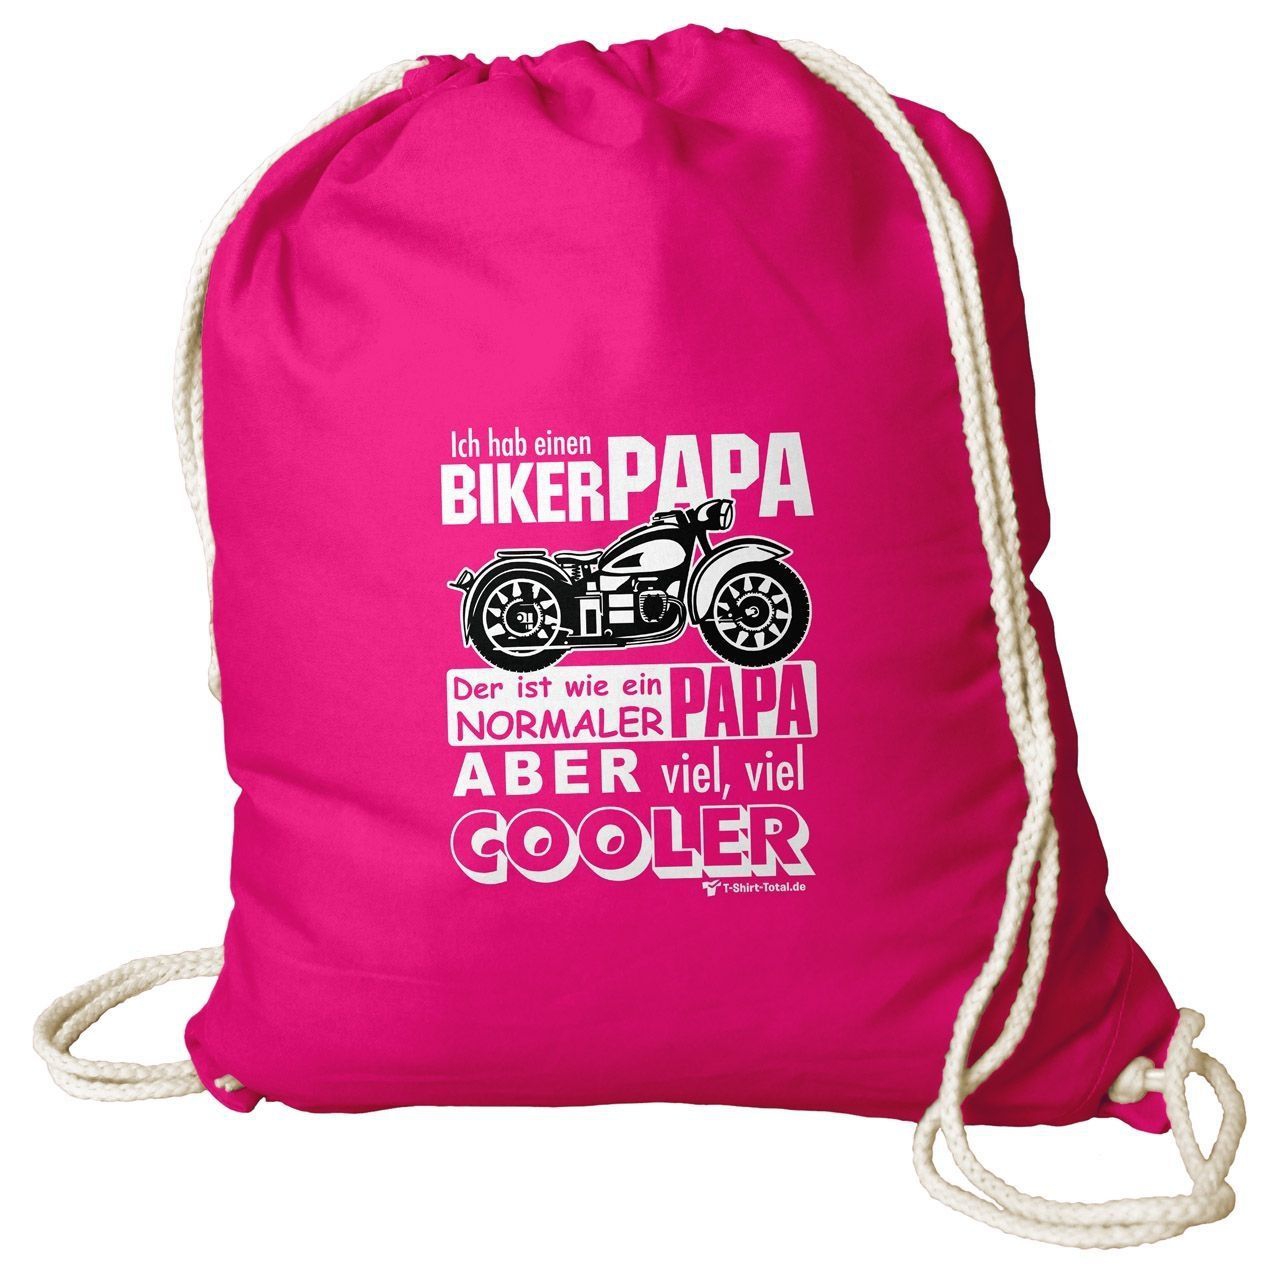 Biker Papa Rucksack Beutel pink